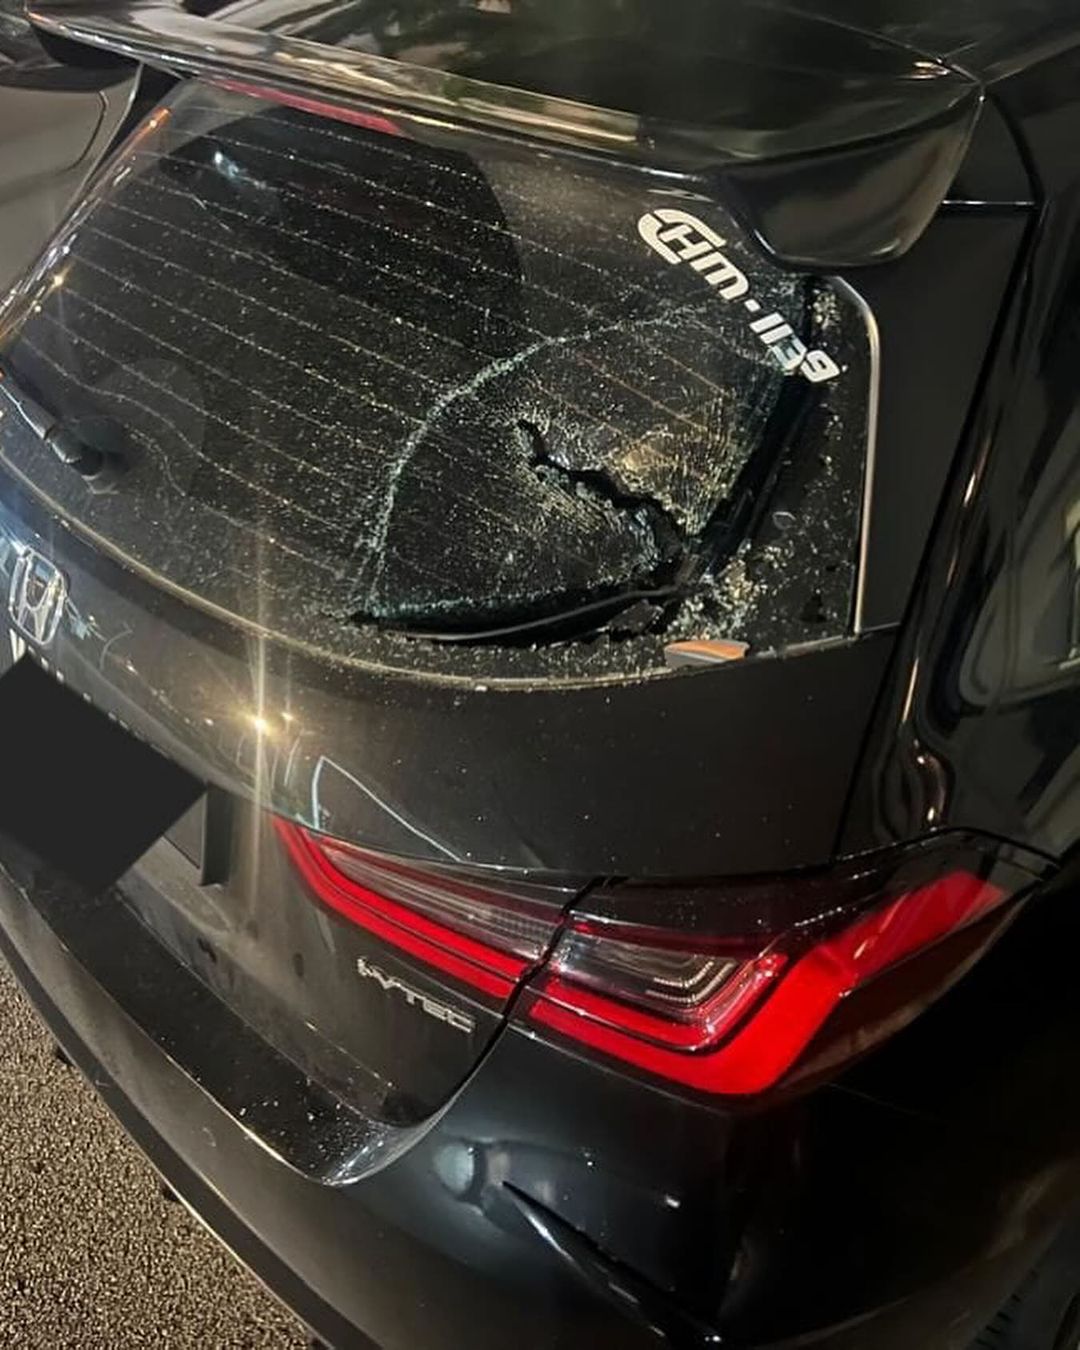 Safiq rahim's car damaged